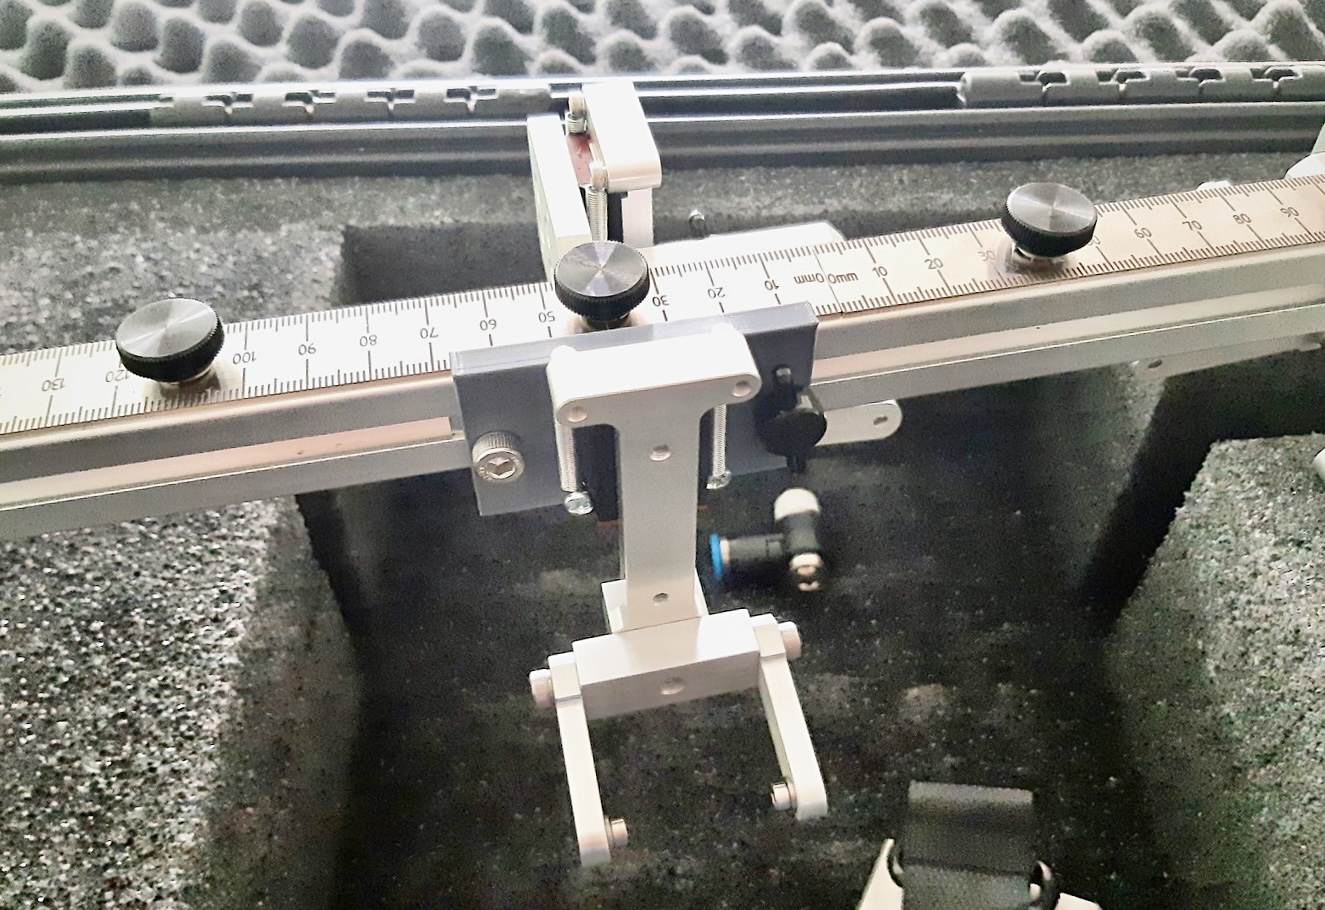 Атомэнергоремонт начал печатать новые детали для ремонта АЭС на 3D-принтере